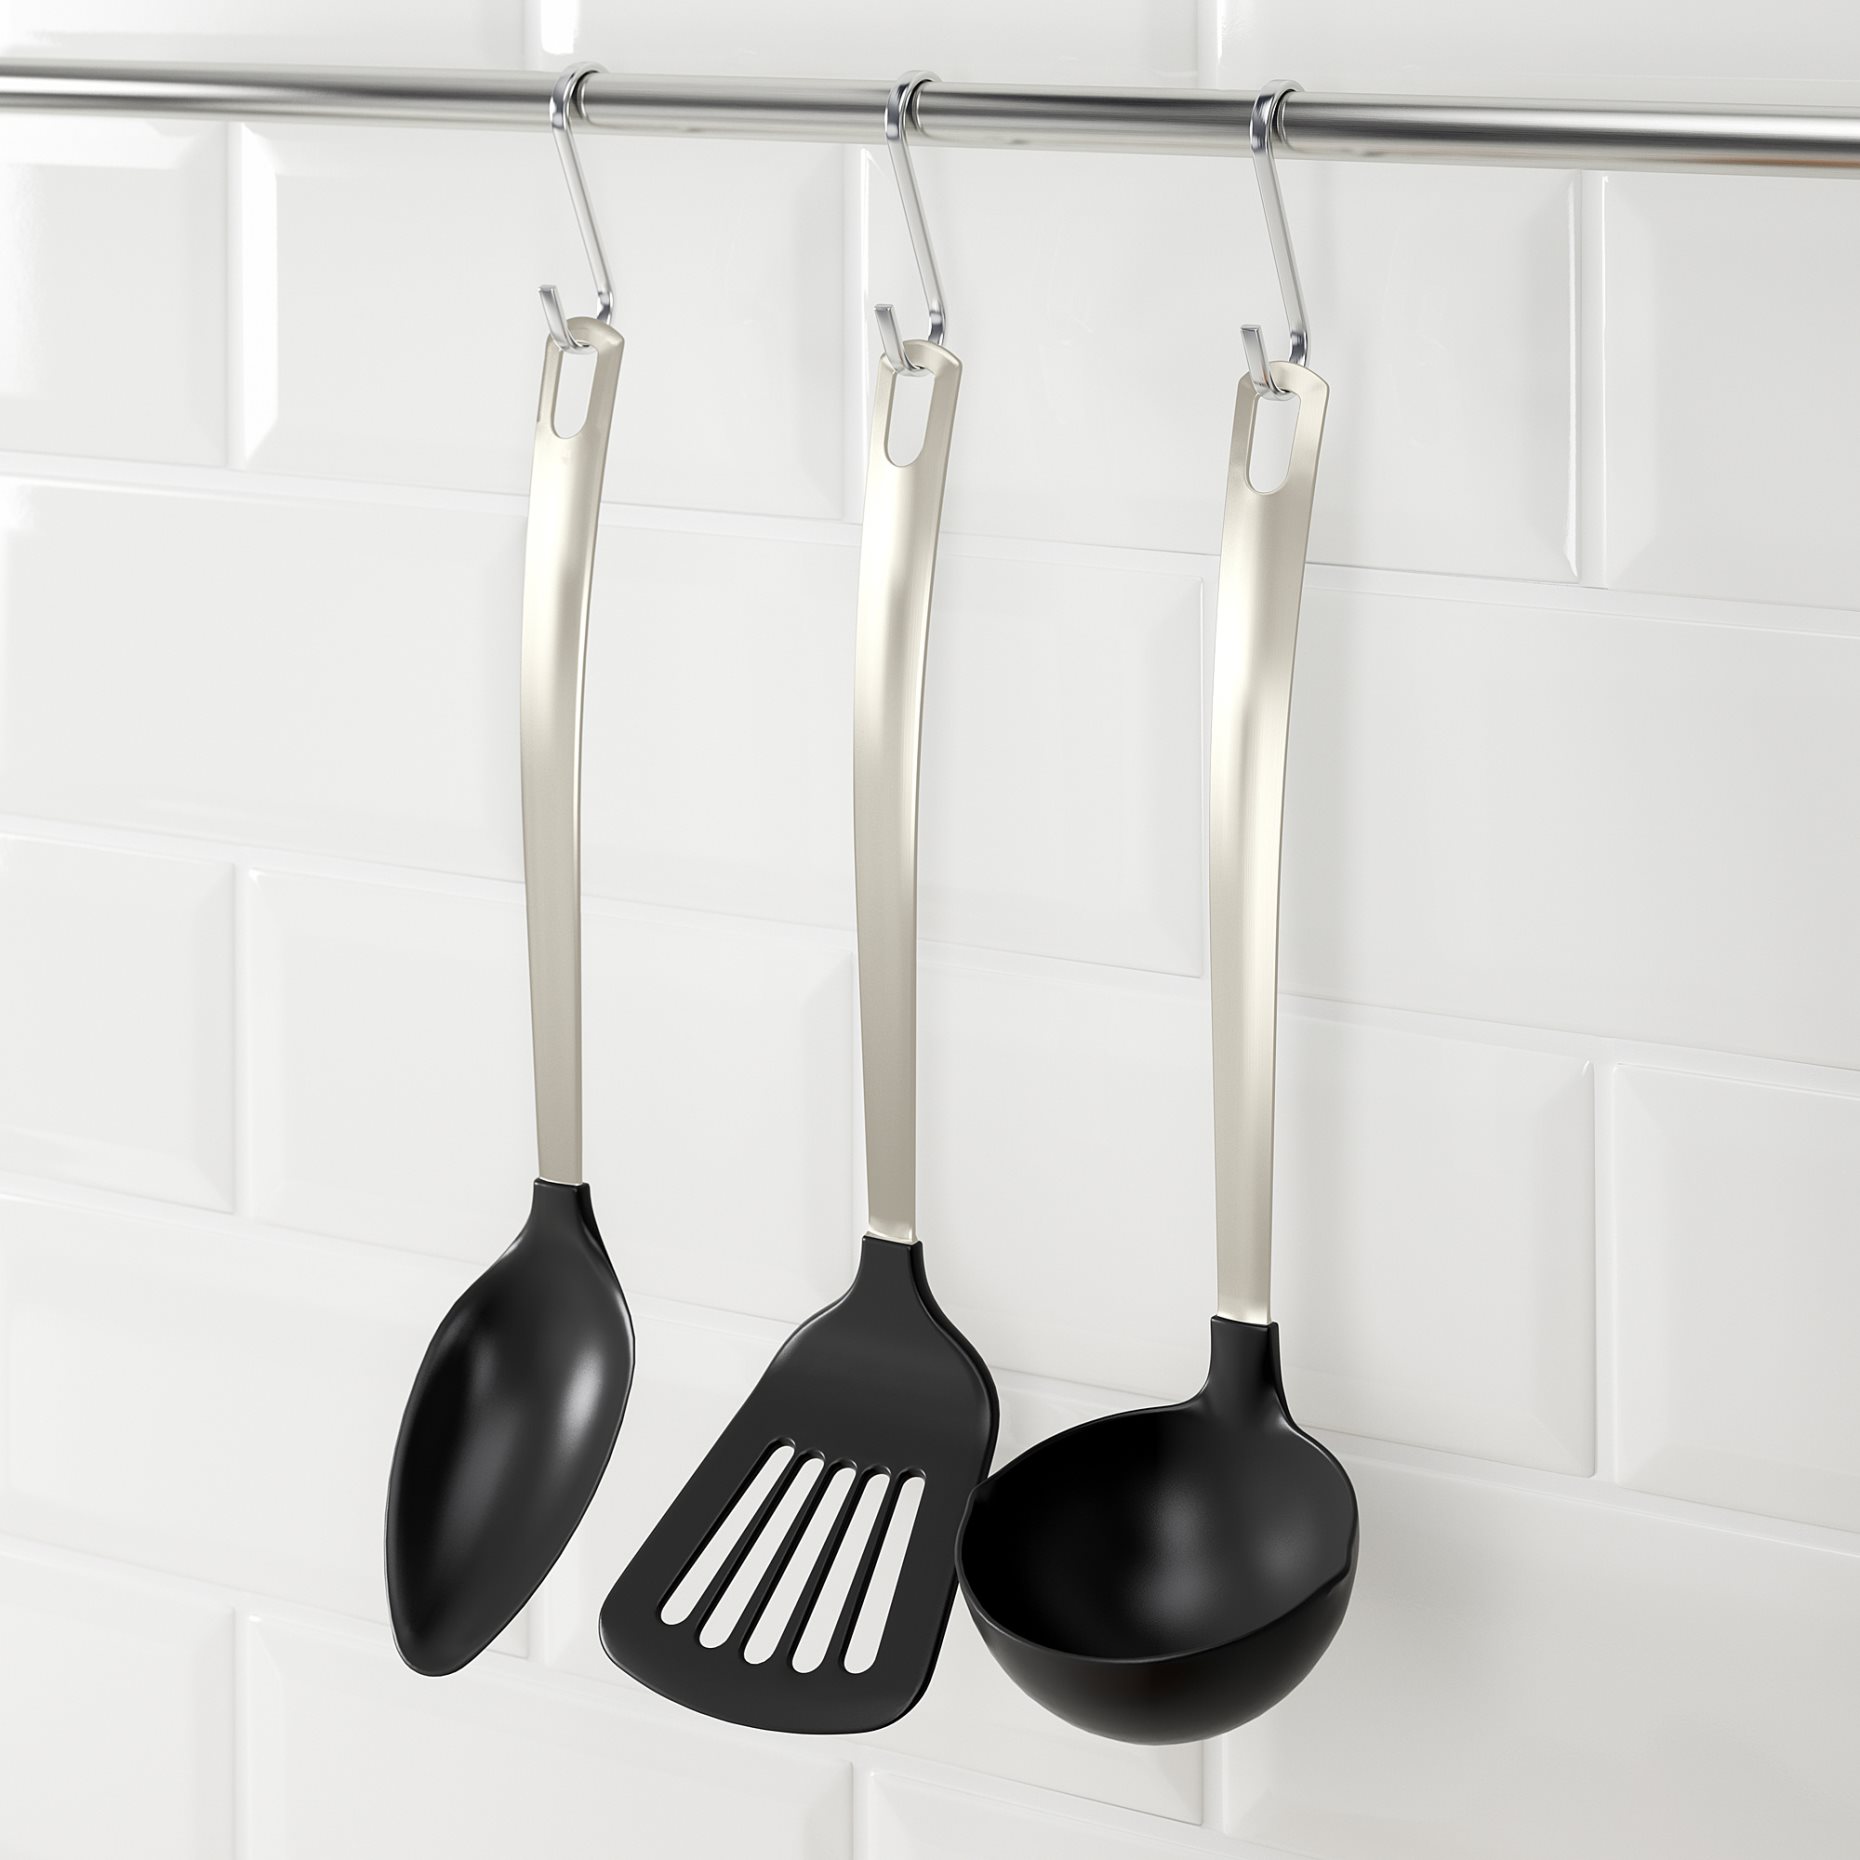 DIREKT, 3-piece kitchen utensil set, 501.375.81